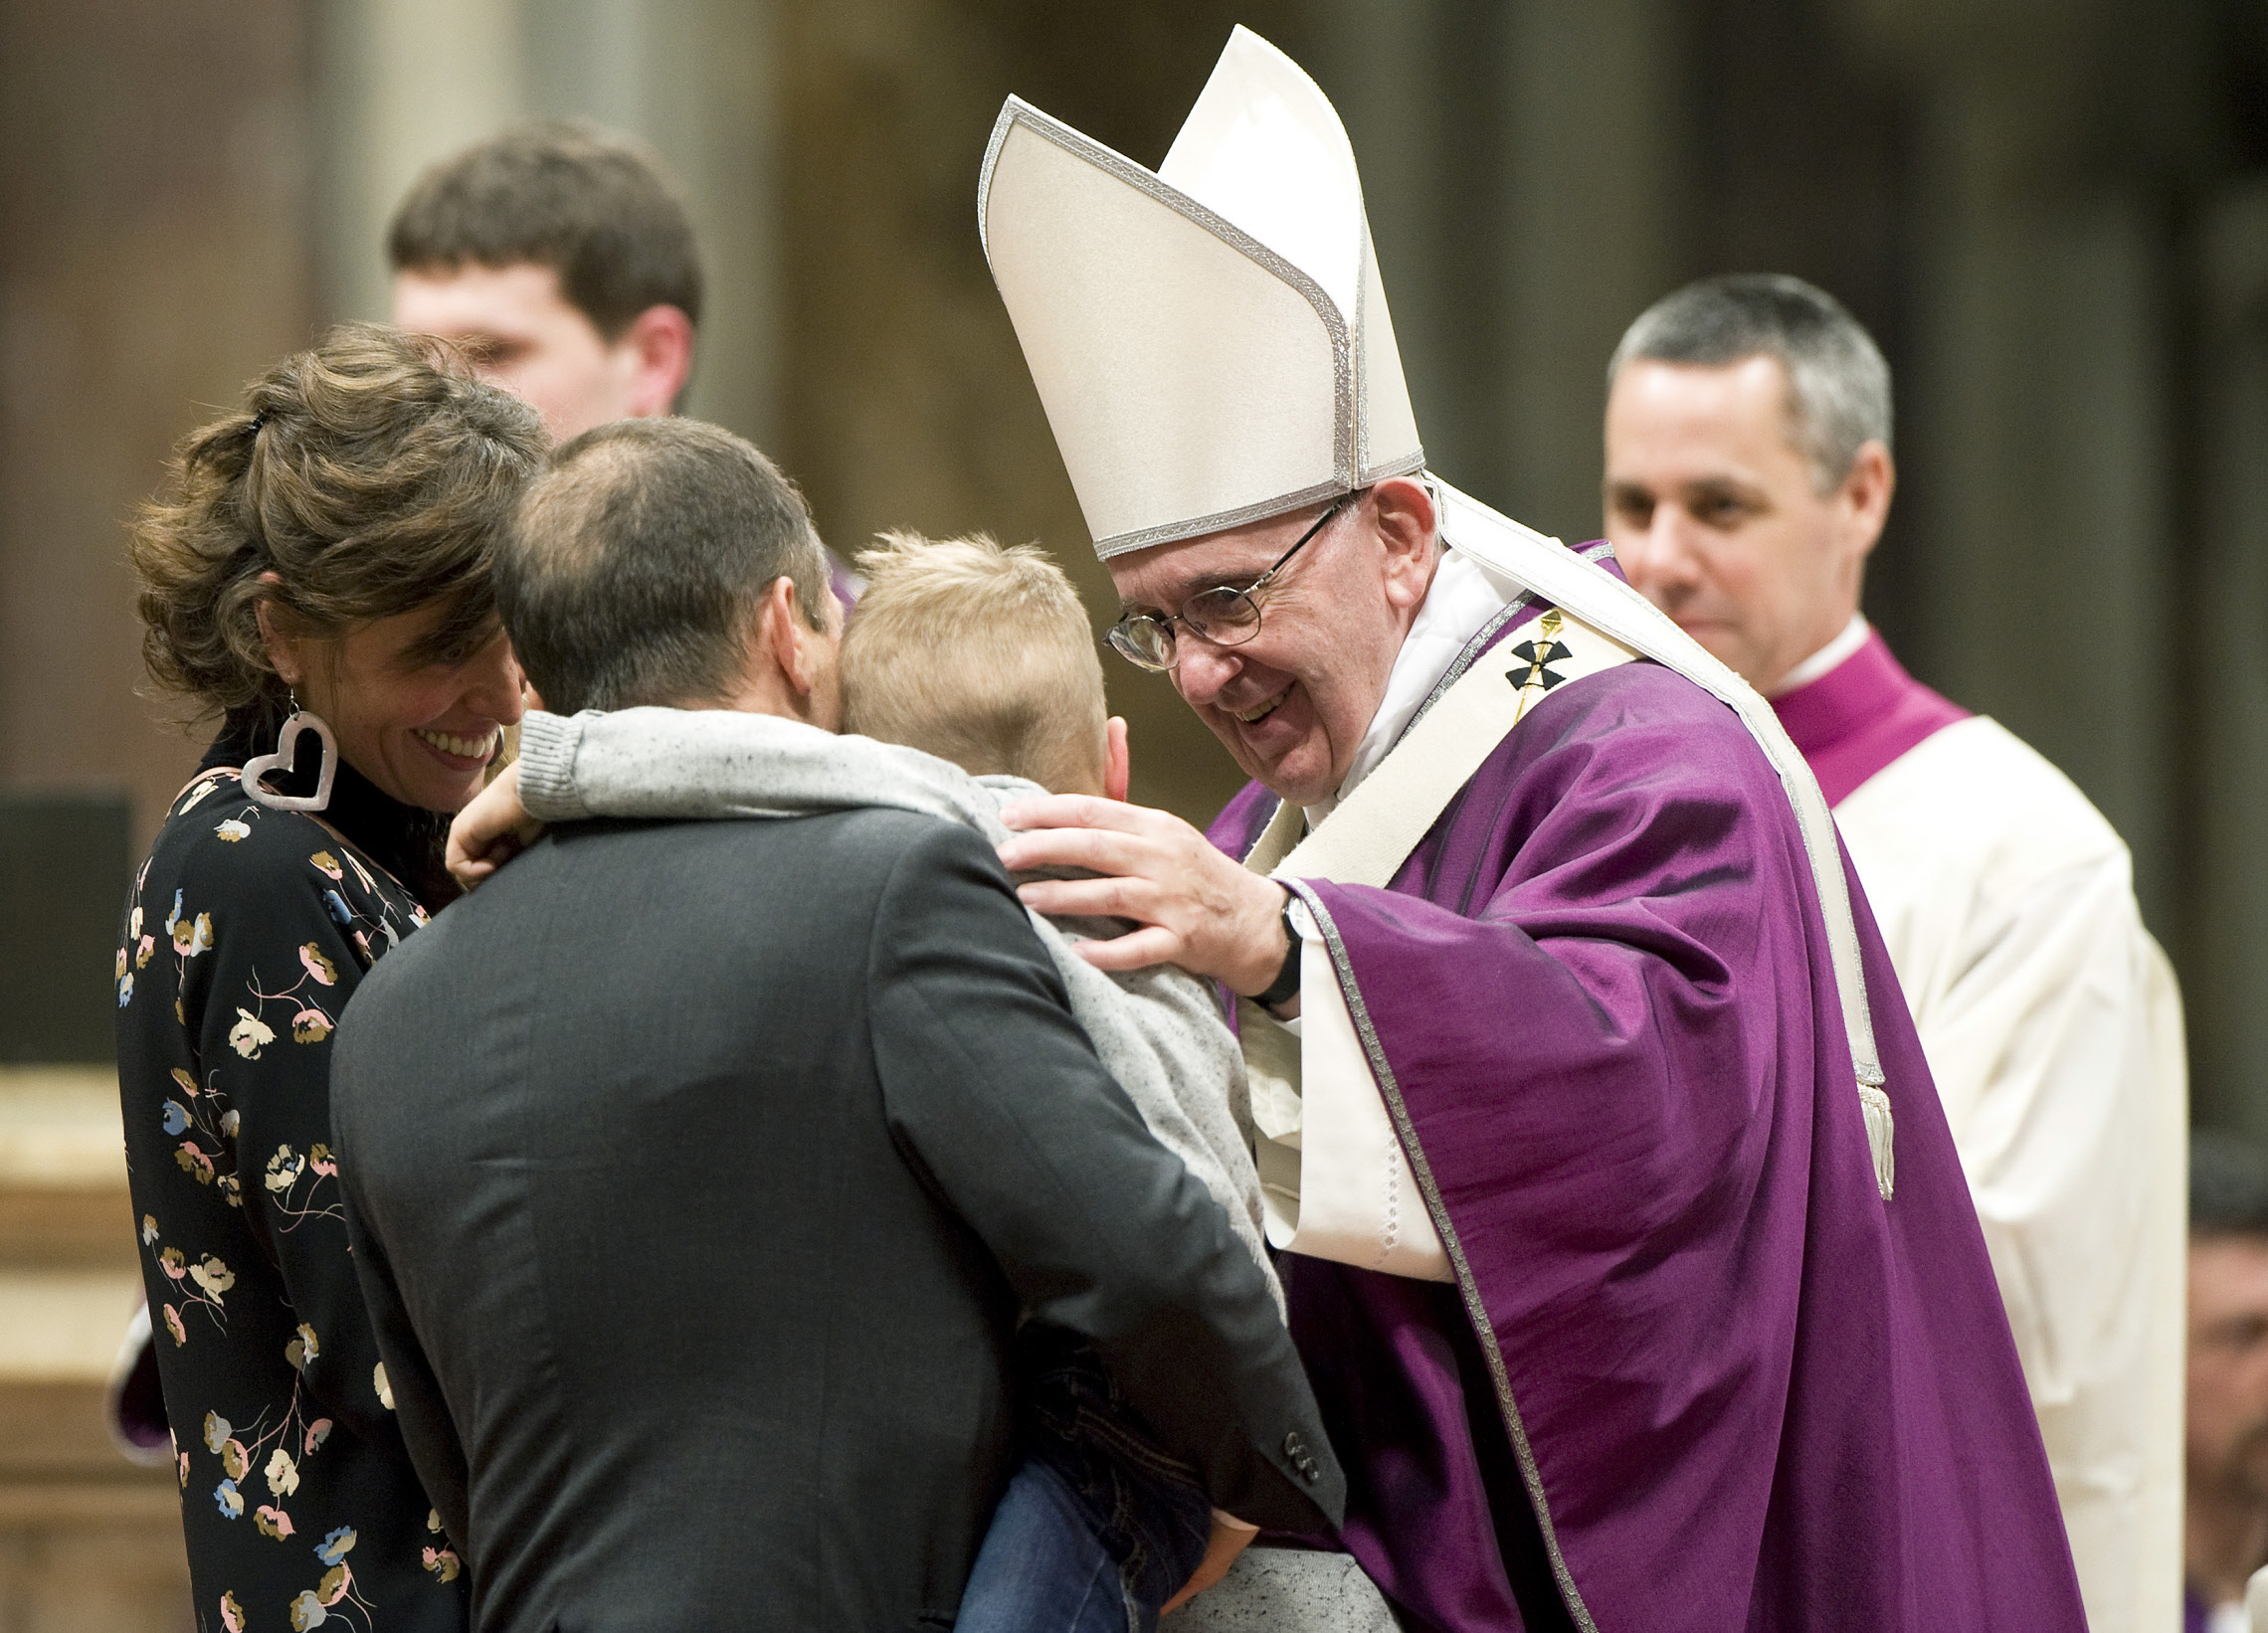 Le pape François félicitant une famille, lors de la messe du mercredi des cendres, en février 2016 à Rome.